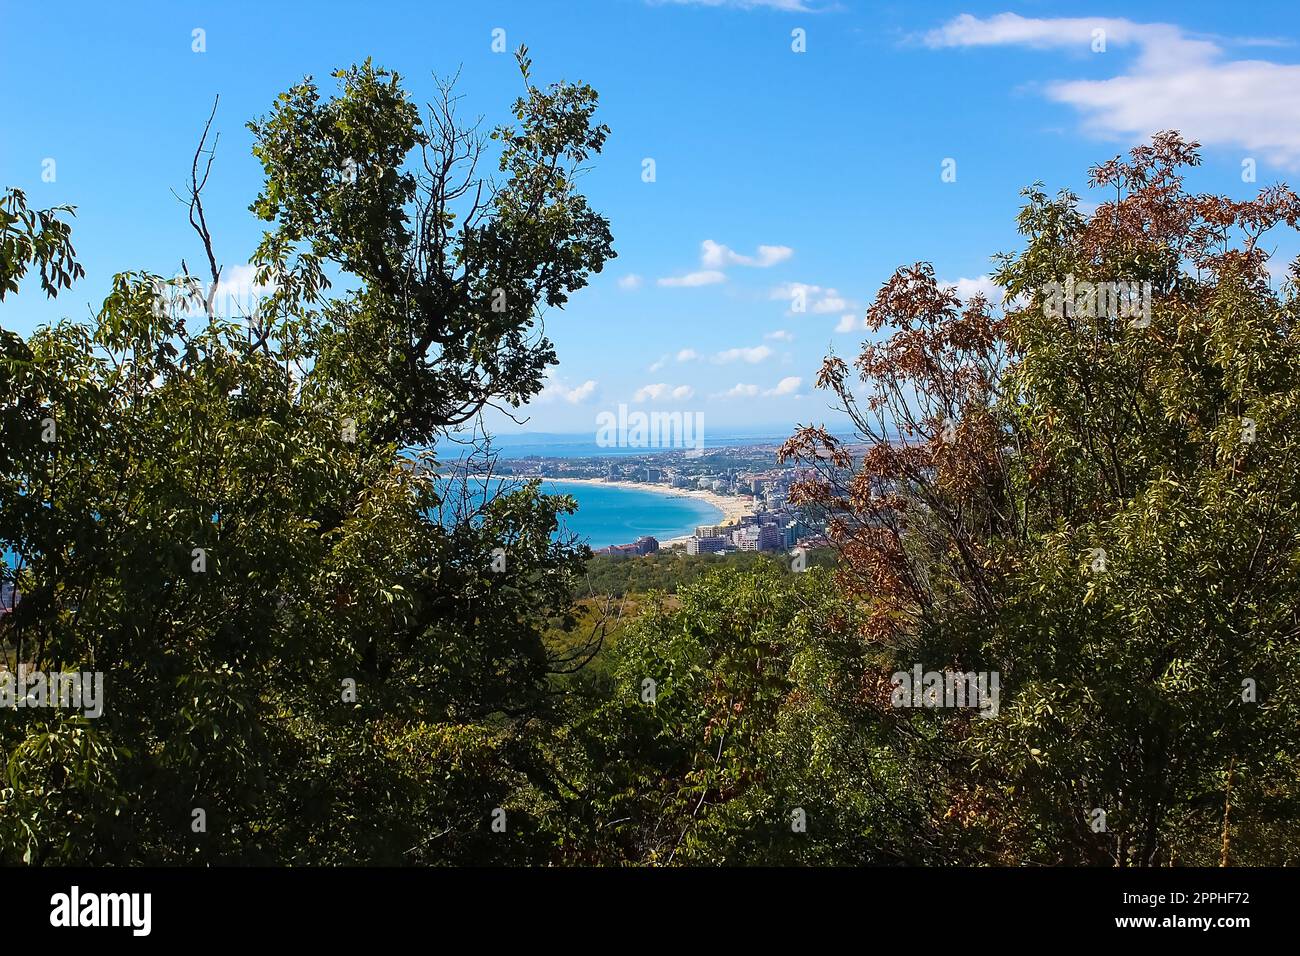 View on bay of Sunny beach resort, Nessebar, Bulgaria Stock Photo